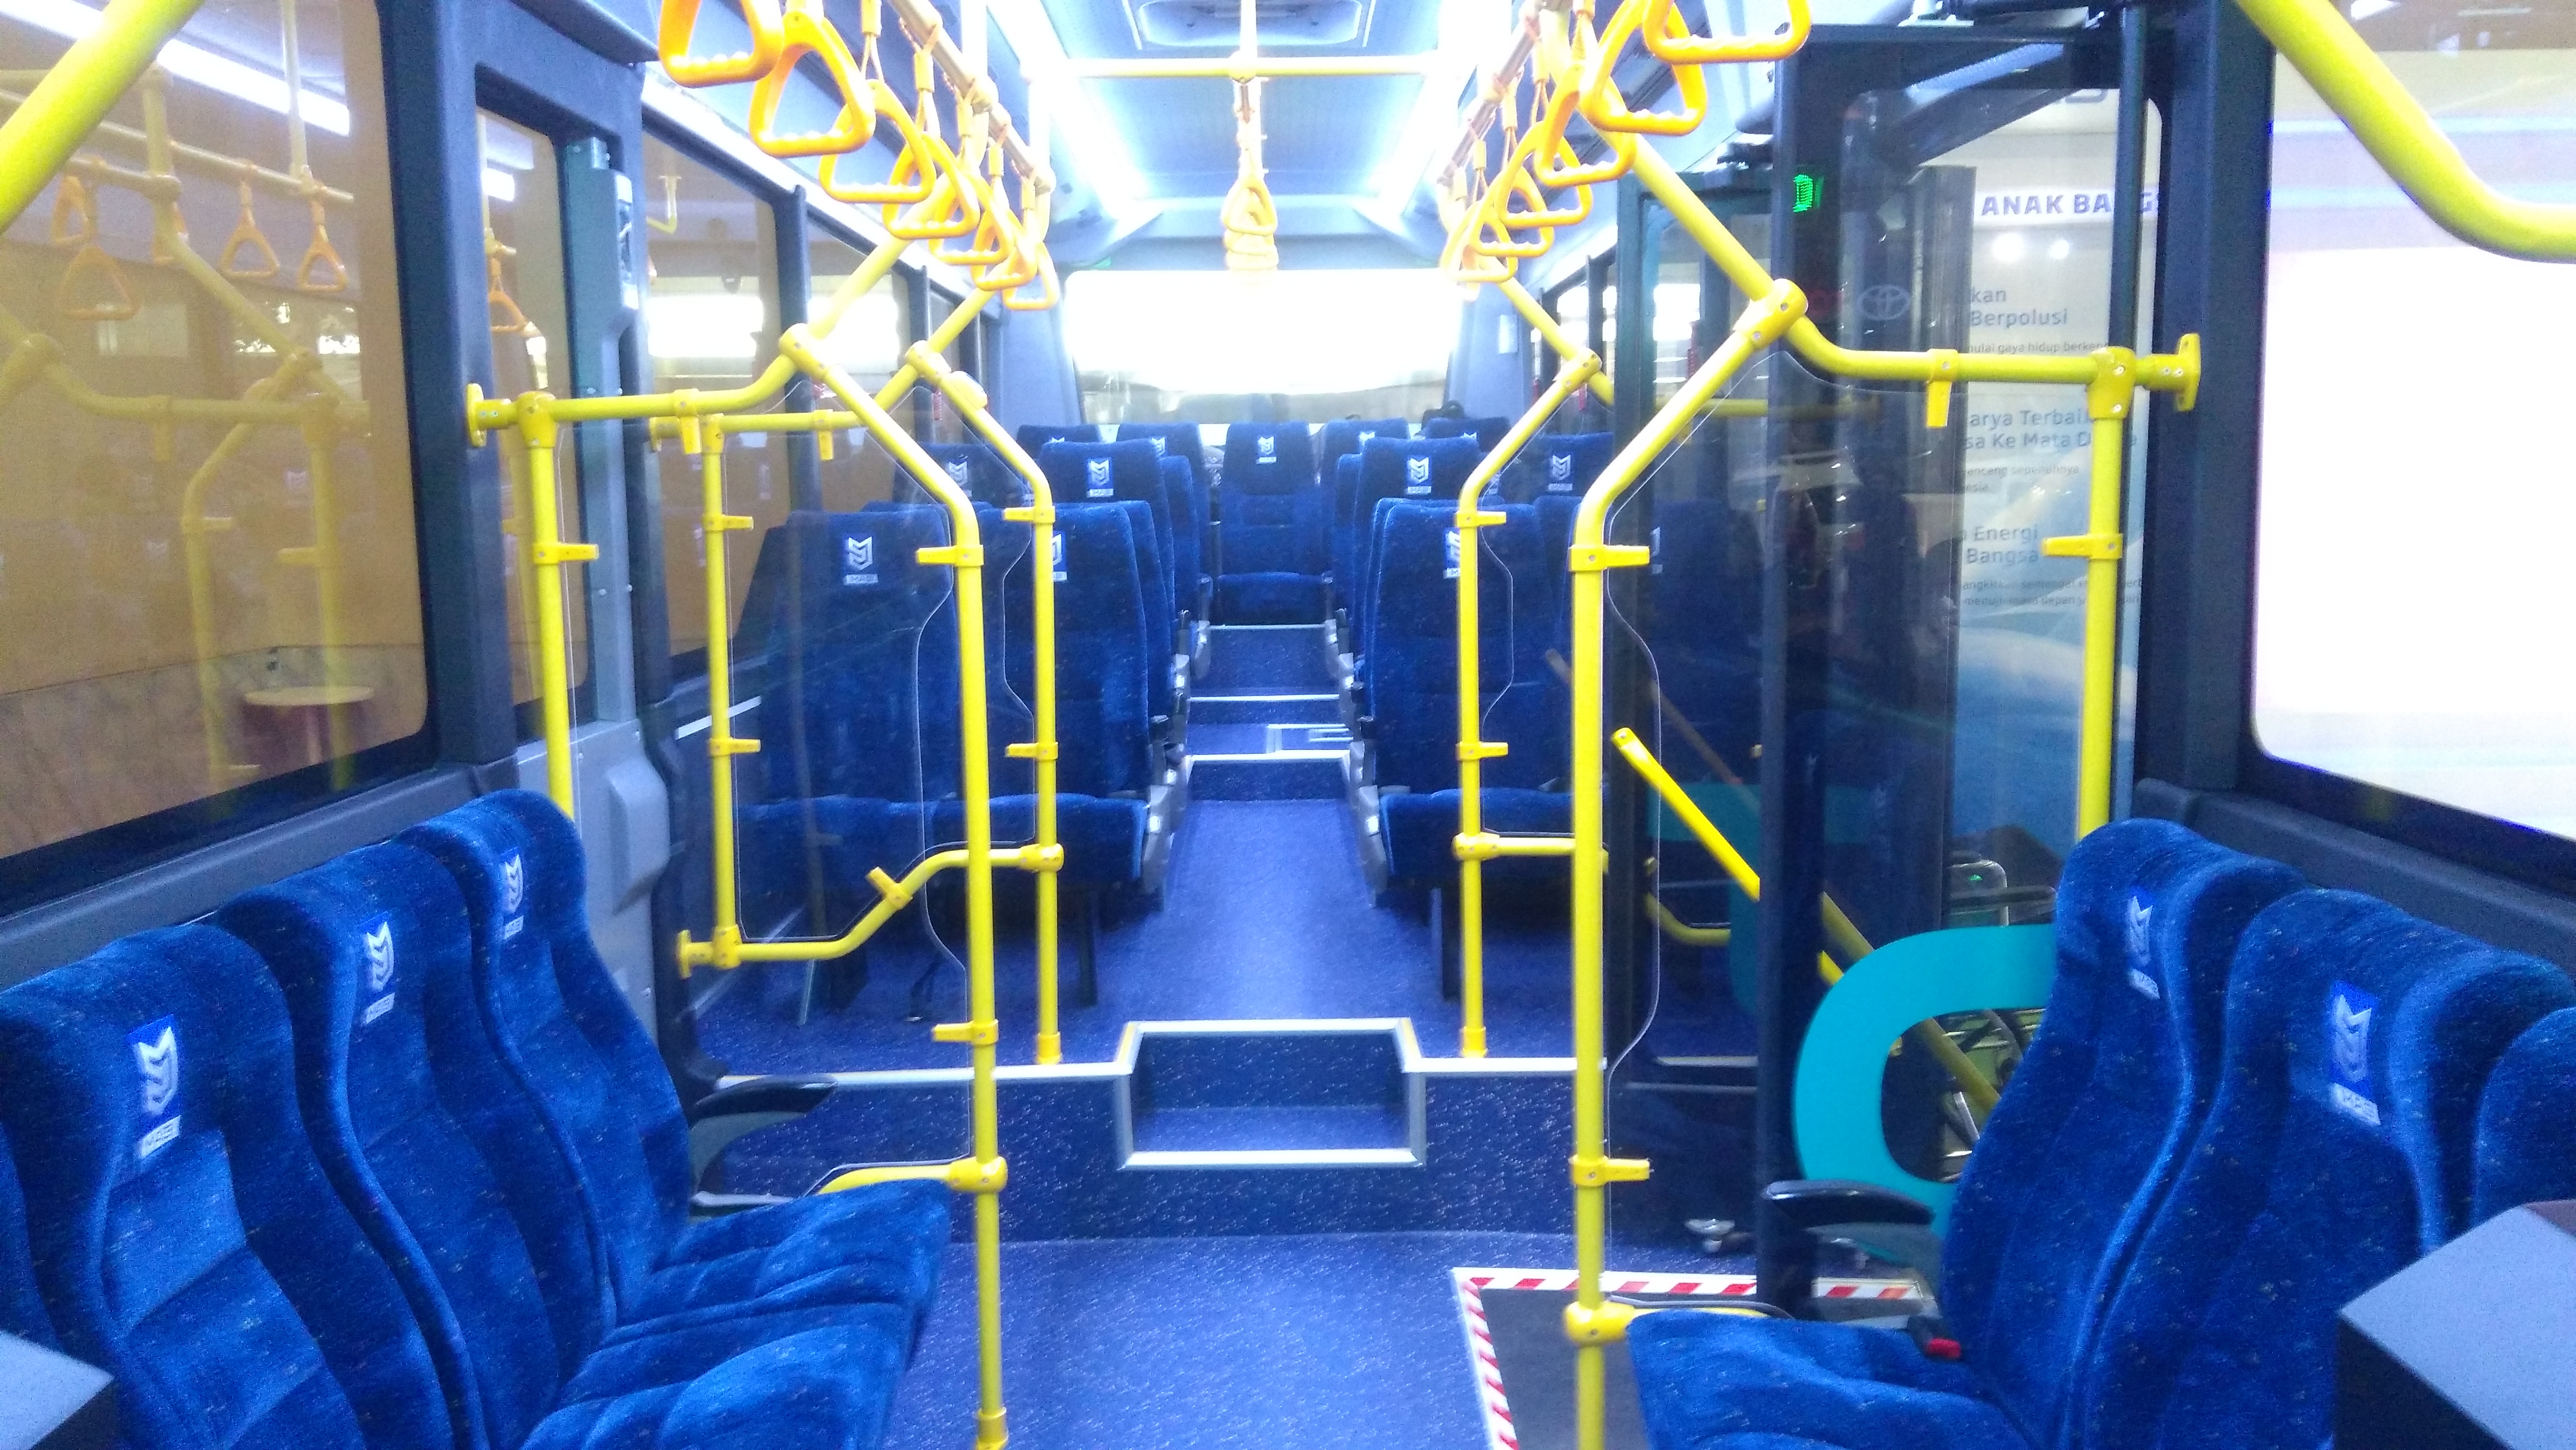 Bus Listrik Moeldoko Bukan Sepenuhnya Karya Anak Bangsa